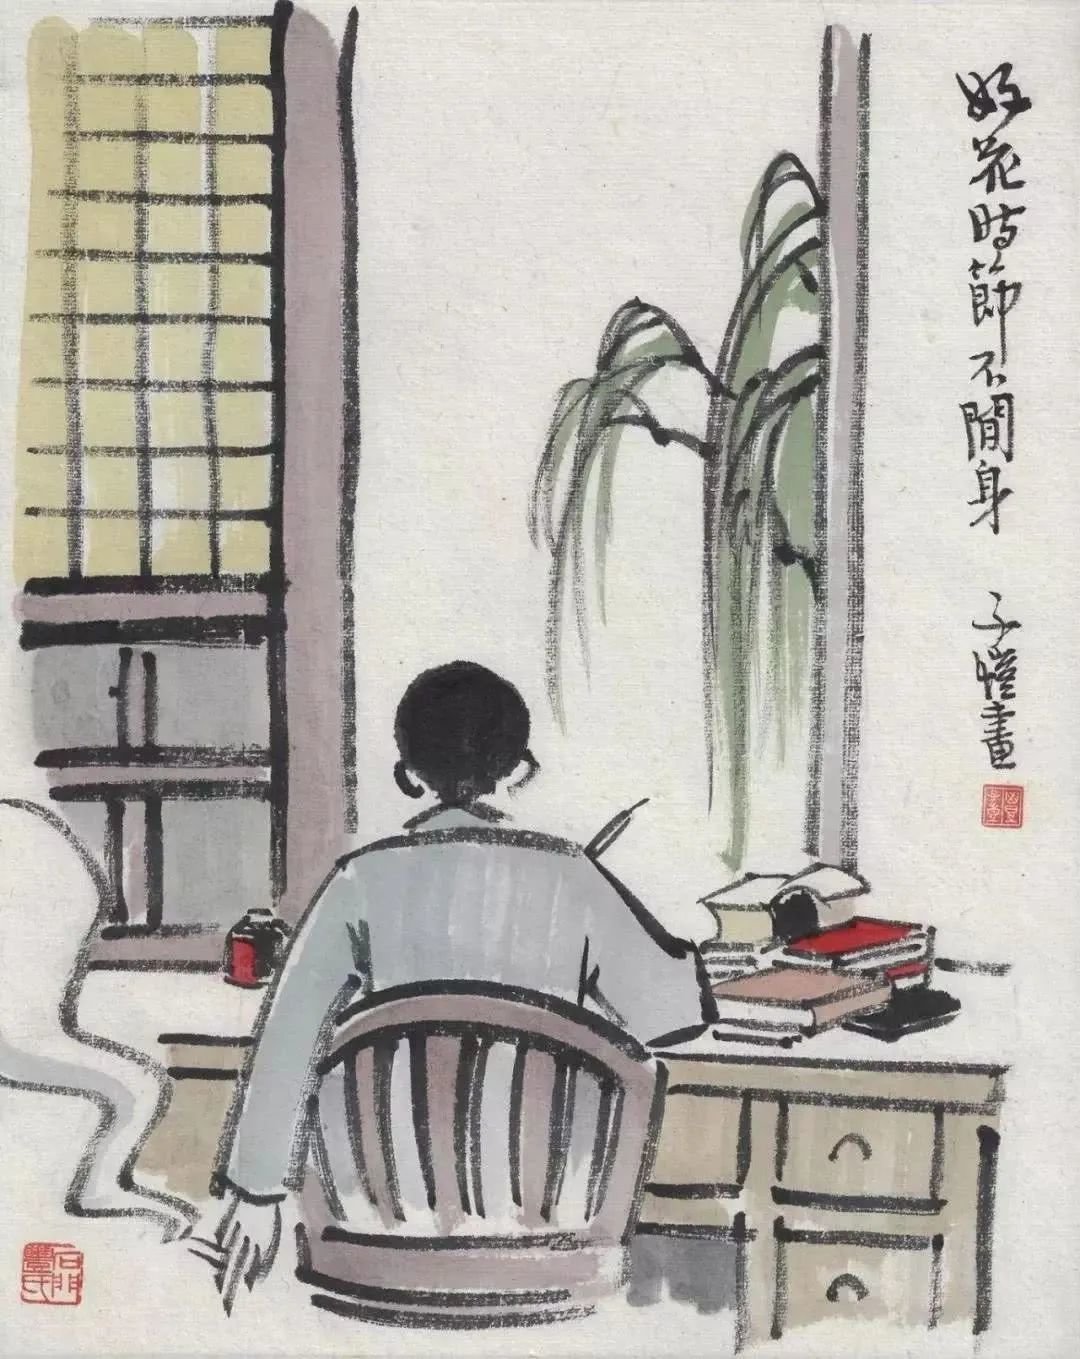 丰子恺漫画《好花时节不闲身》，描绘了自己的工作场景